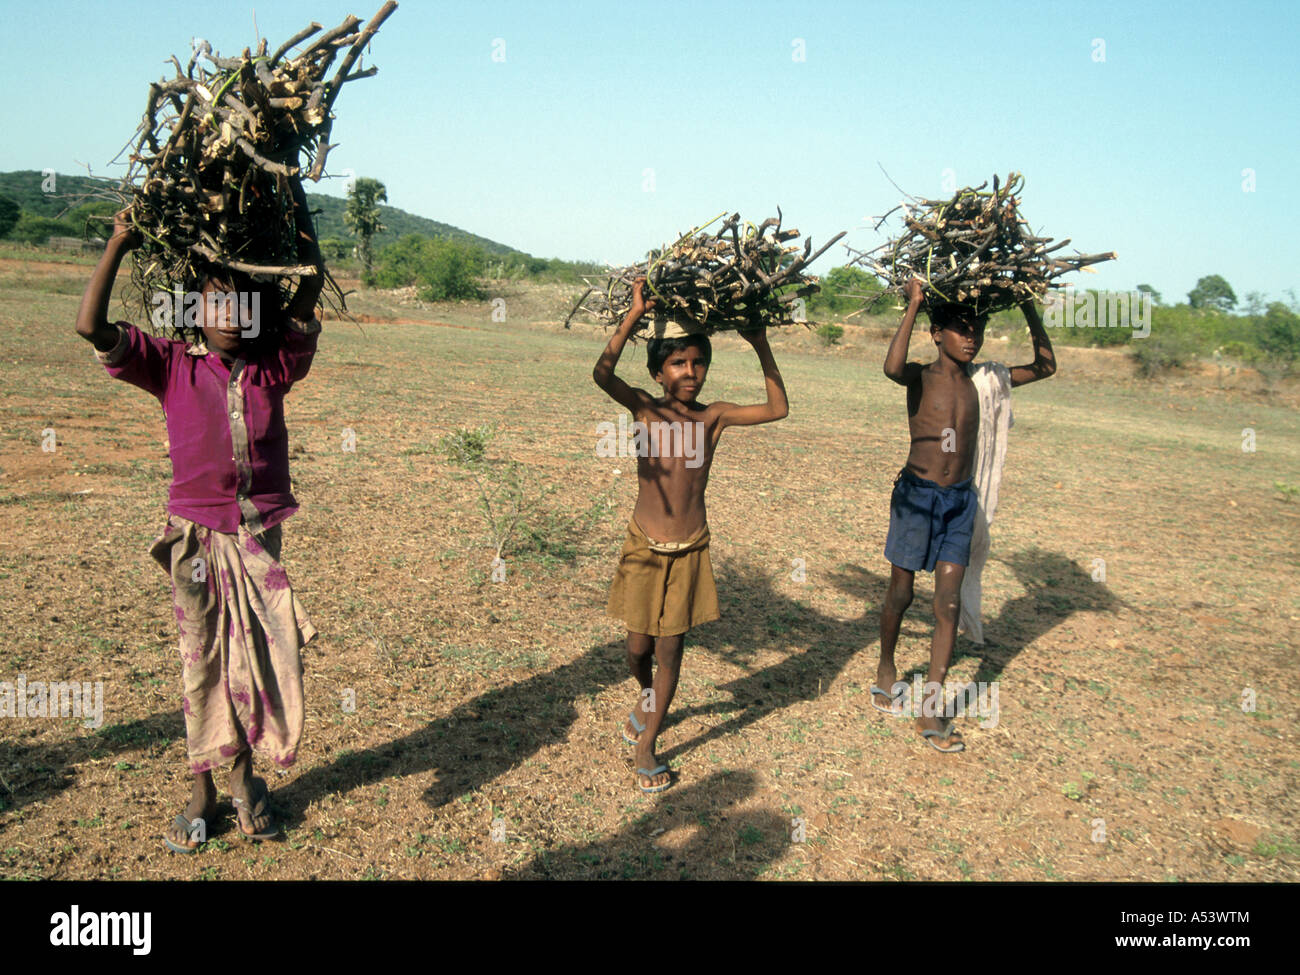 Painet ha2230 5016 Indien Kinder Arbeits-Land entwickelnde Nation wirtschaftlich entwickelten Kultur Markt Minderheit Stockfoto